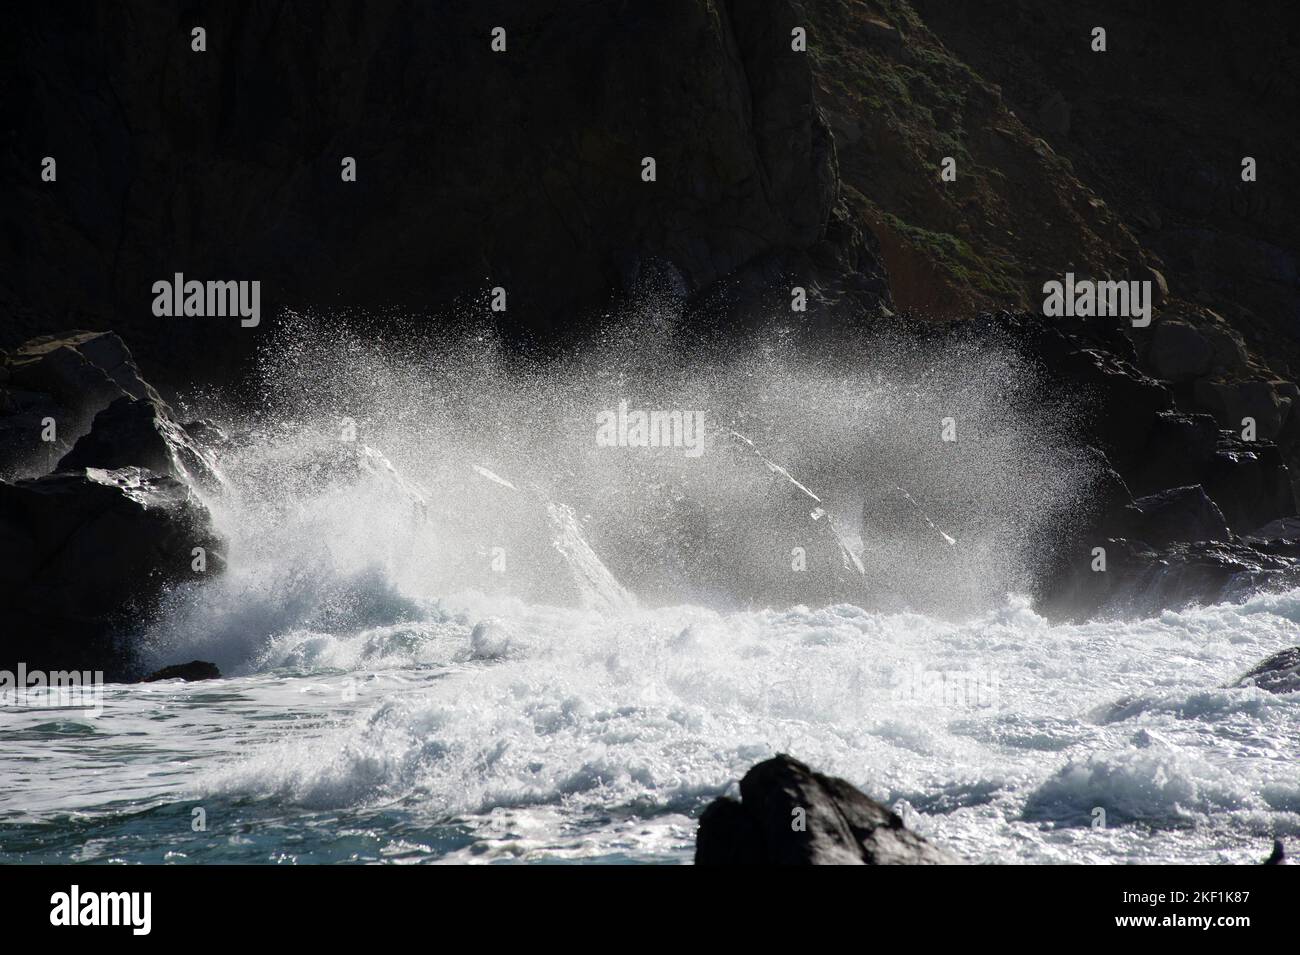 Crashing Wave splashing against rock Stock Photo